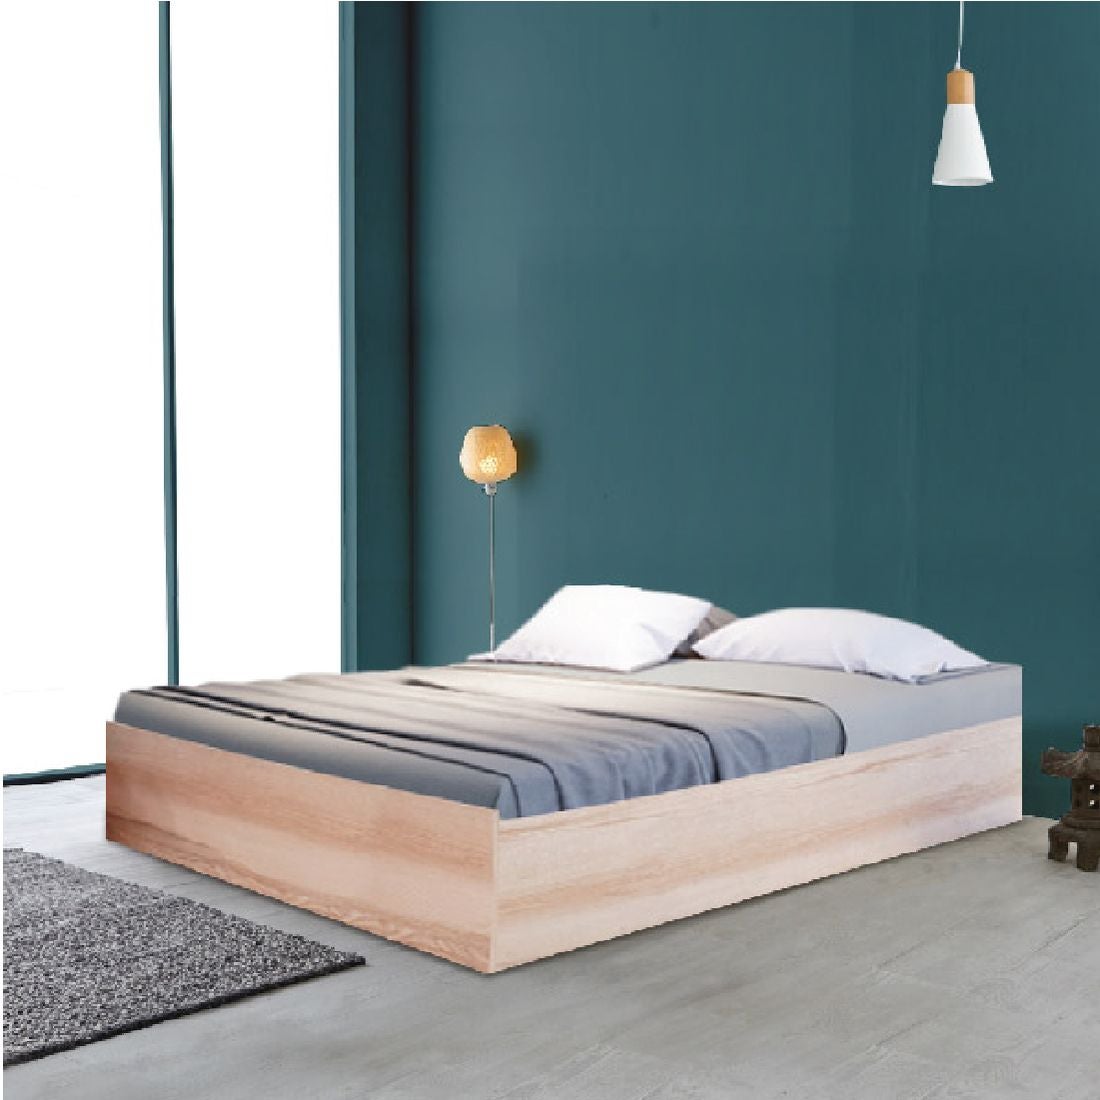 ชุดห้องนอน เตียง รุ่น KC-PLAY สีสีโอ๊คอ่อน-SB Design Square